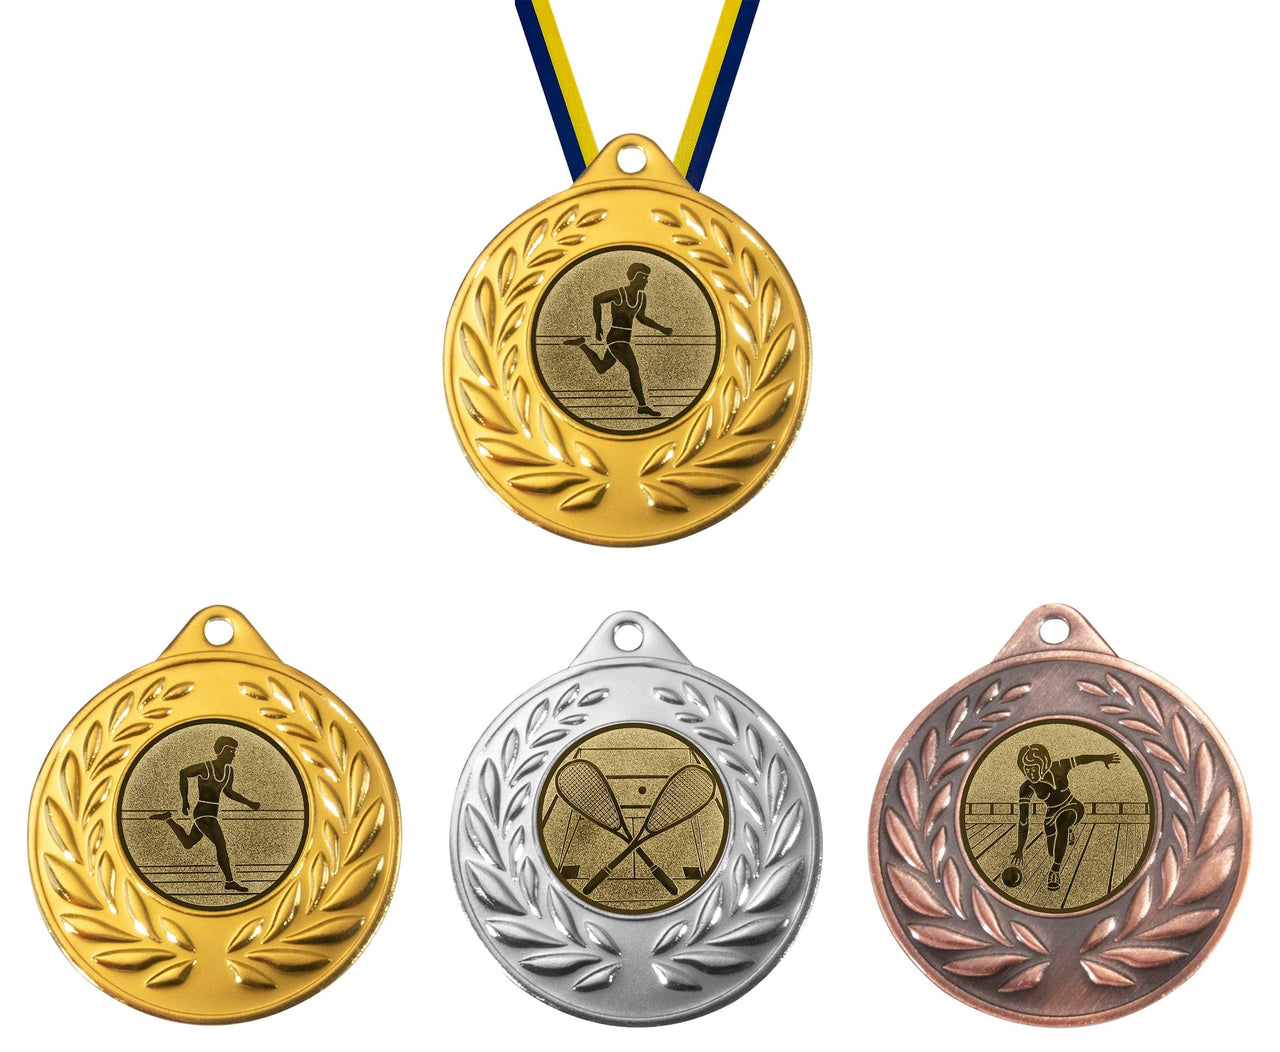 Vier Medaillen mit unterschiedlichen Designs auf ihnen.
Produkt: Medaillen München 50 mm PK79342g-E25
Marke: POMEKI